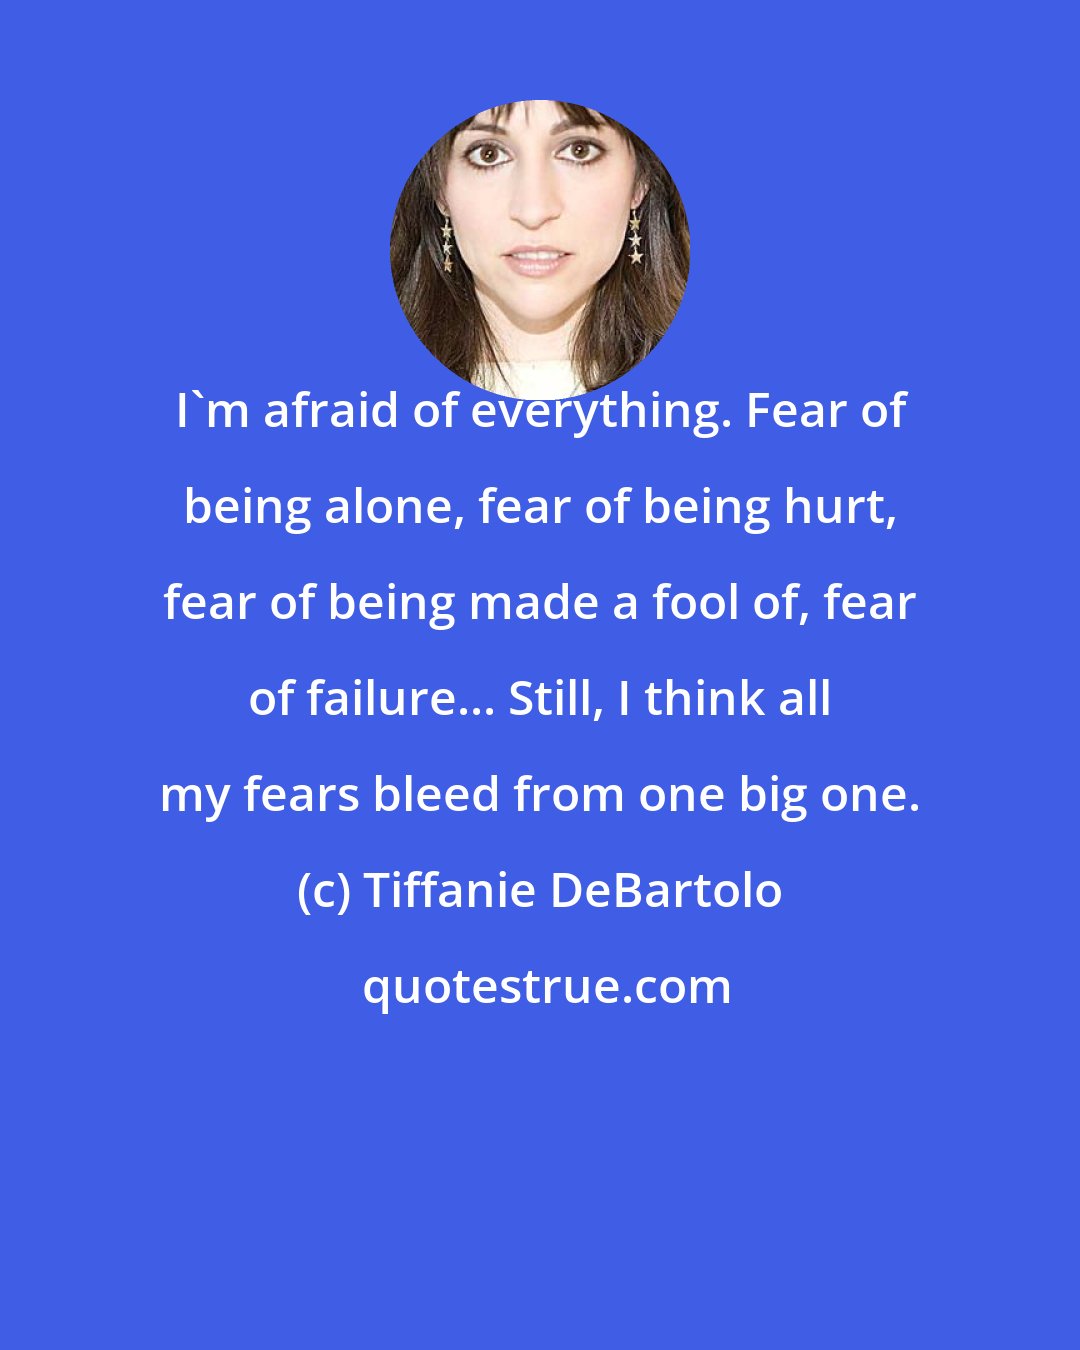 Tiffanie DeBartolo: I'm afraid of everything. Fear of being alone, fear of being hurt, fear of being made a fool of, fear of failure... Still, I think all my fears bleed from one big one.